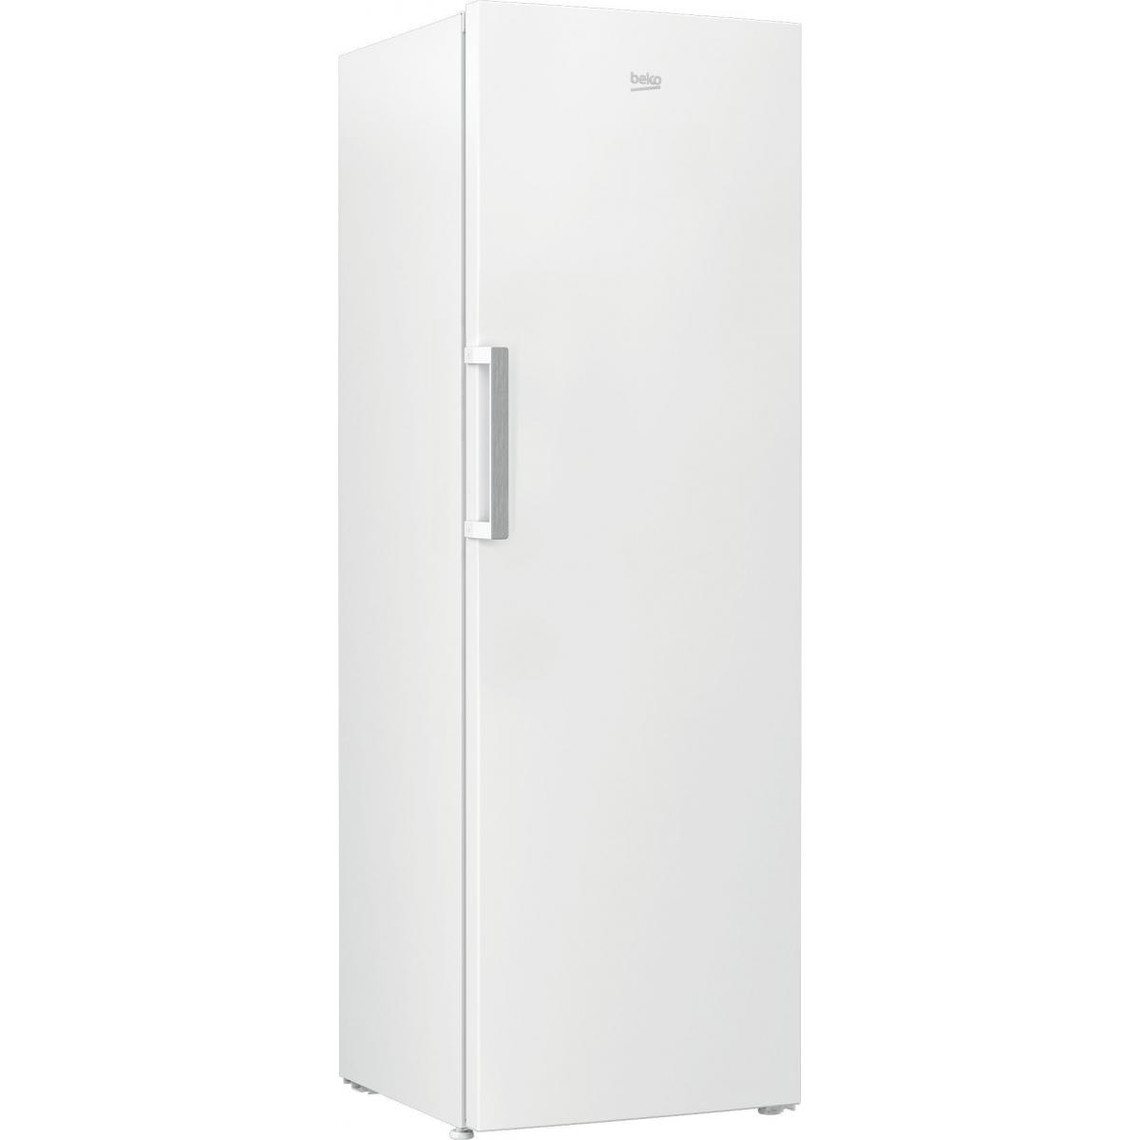 Beko Réfrigérateur 1 porte 60cm 367l blanc - rsse415m31wn - BEKO